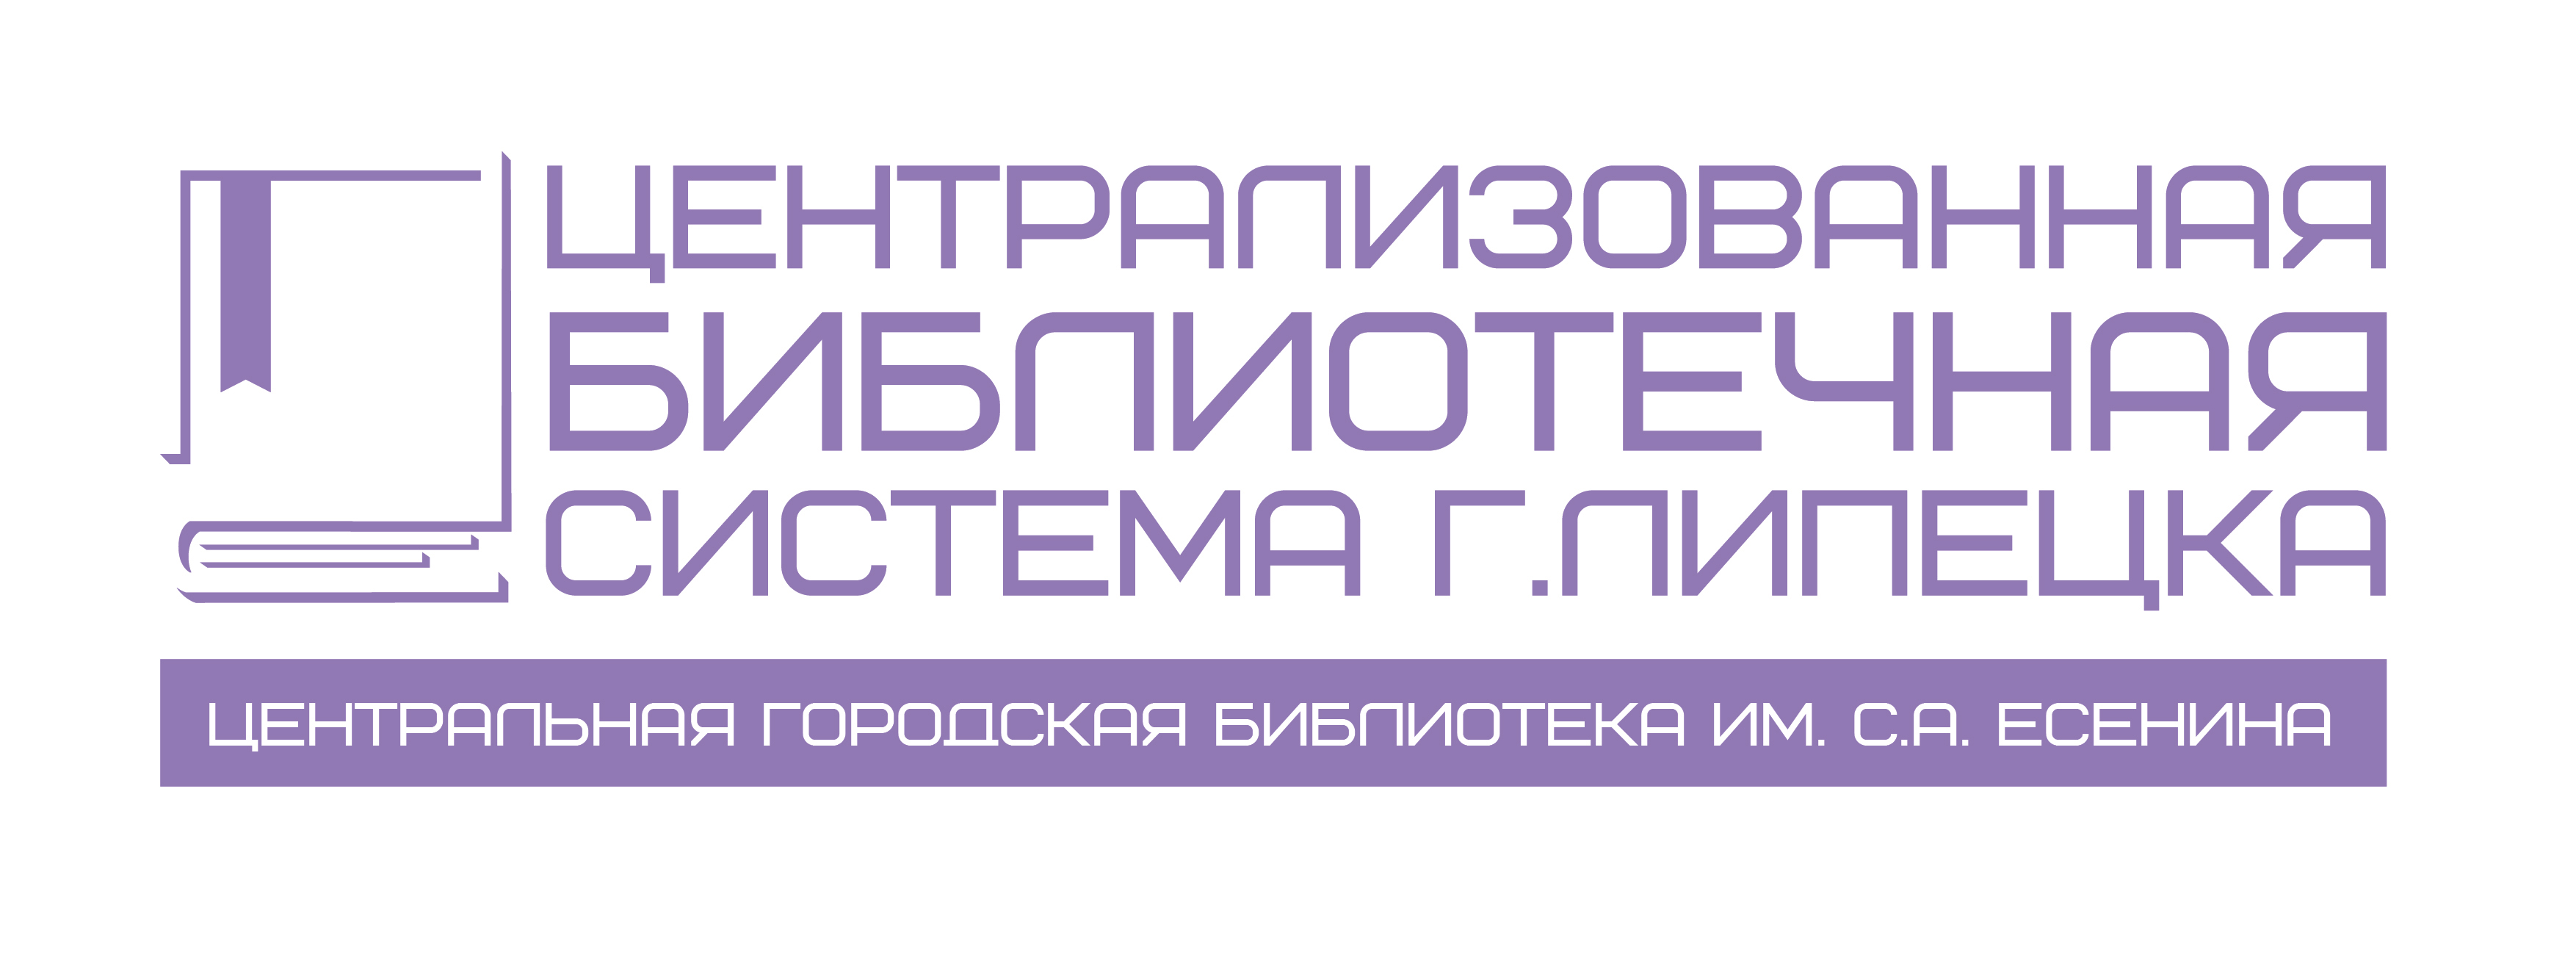 Логотип МУ ЦБС г. Липецка